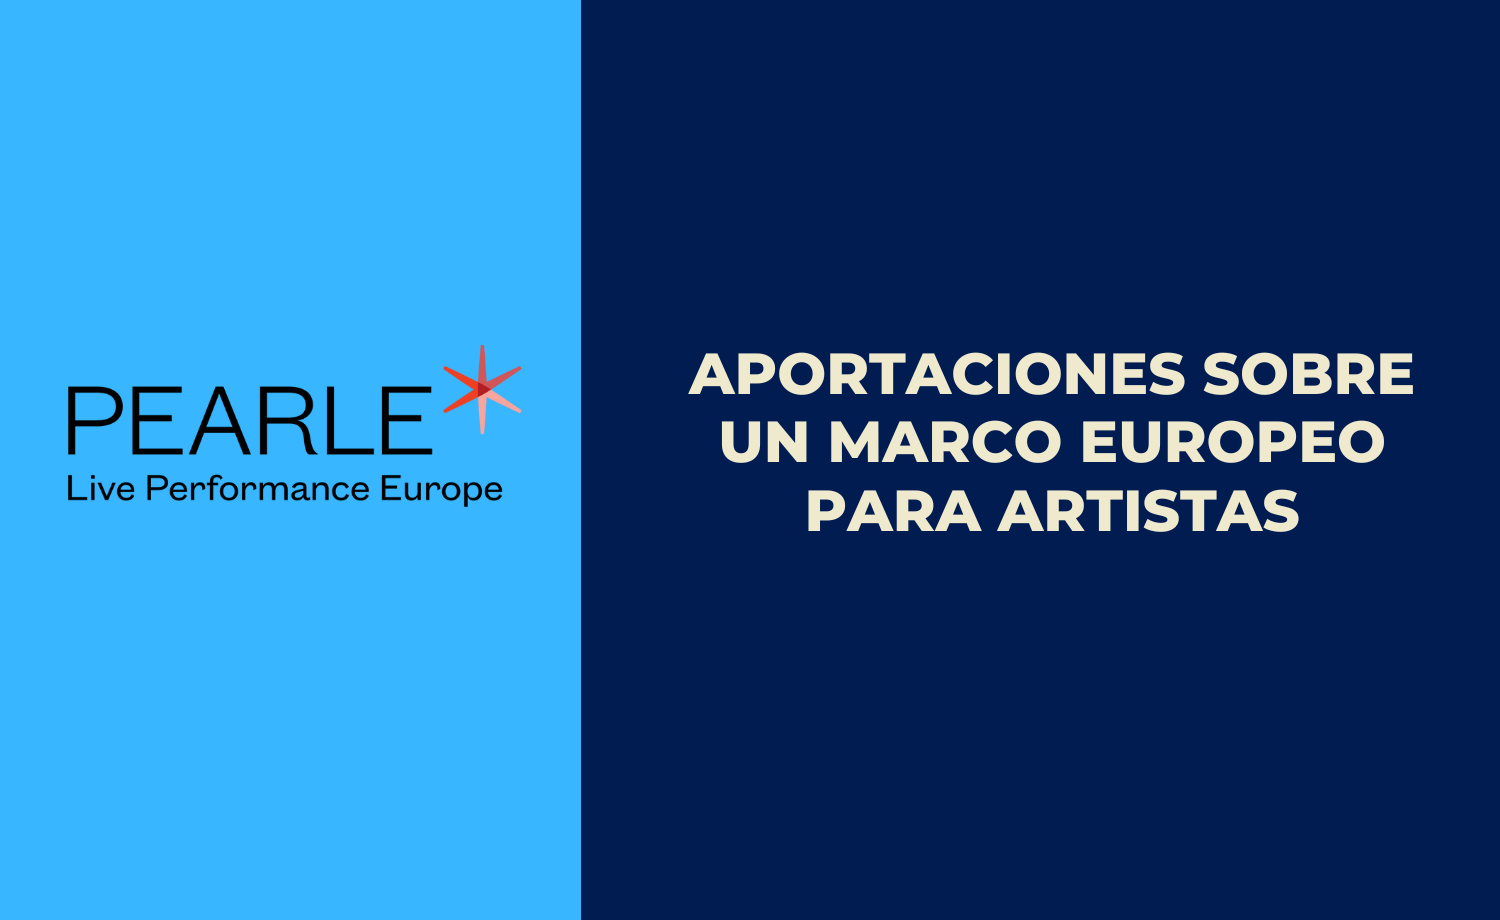 Aportaciones de Pearle* sobre un marco de la UE para artistas